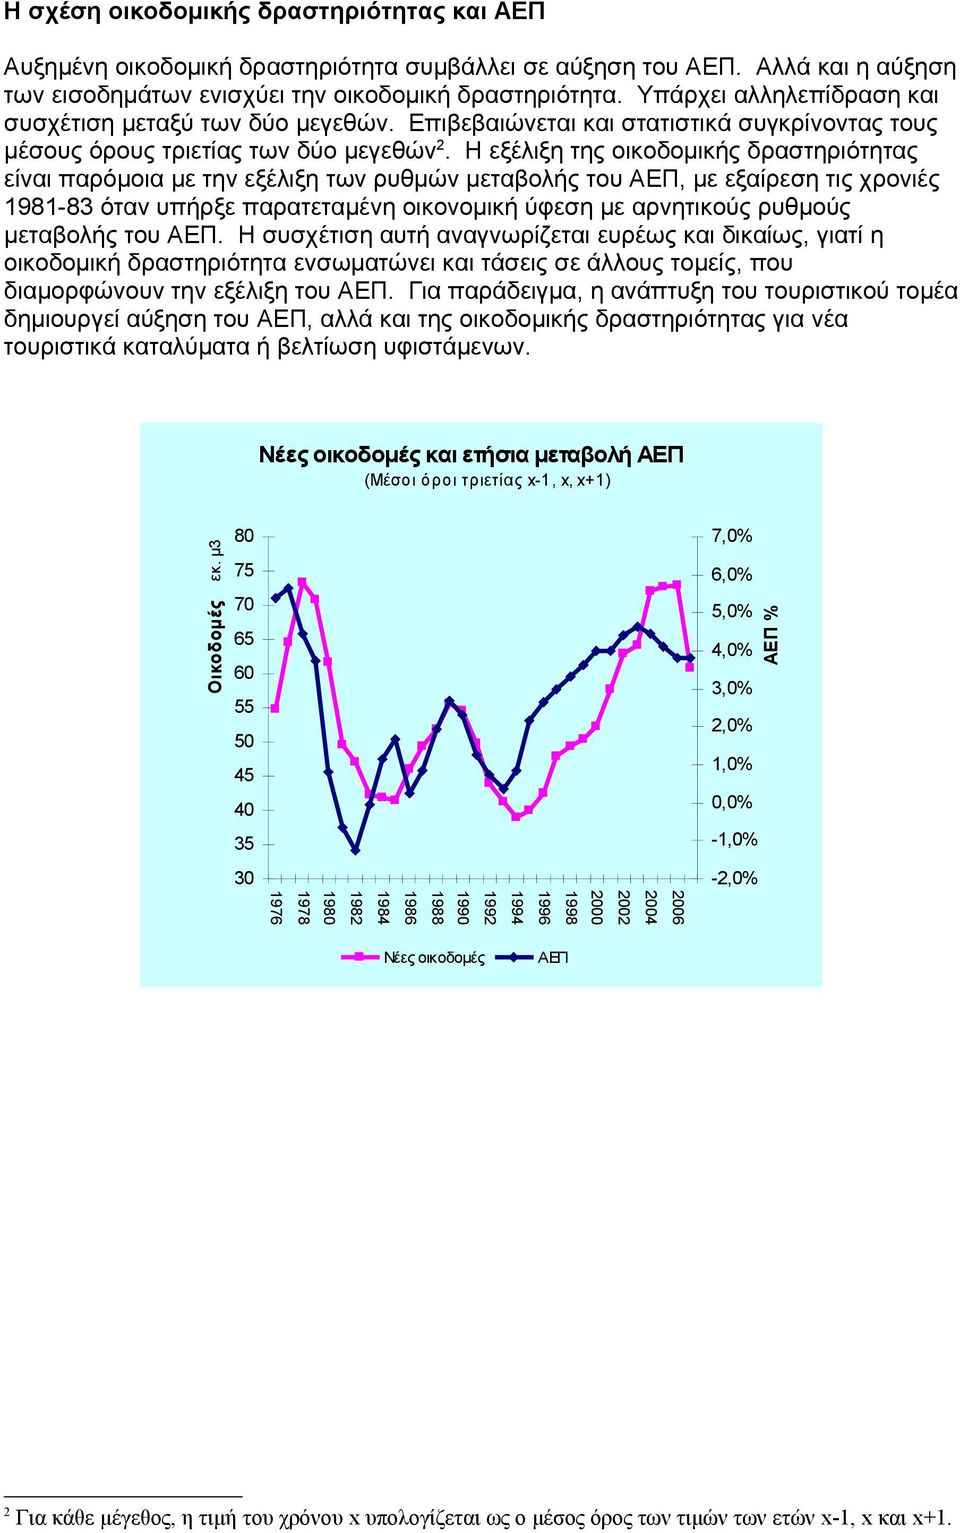 Η εξέλιξη της οικοδομικής δραστηριότητας είναι παρόμοια με την εξέλιξη των ρυθμών μεταβολής του ΑΕΠ, με εξαίρεση τις χρονιές 1981-83 όταν υπήρξε παρατεταμένη οικονομική ύφεση με αρνητικούς ρυθμούς